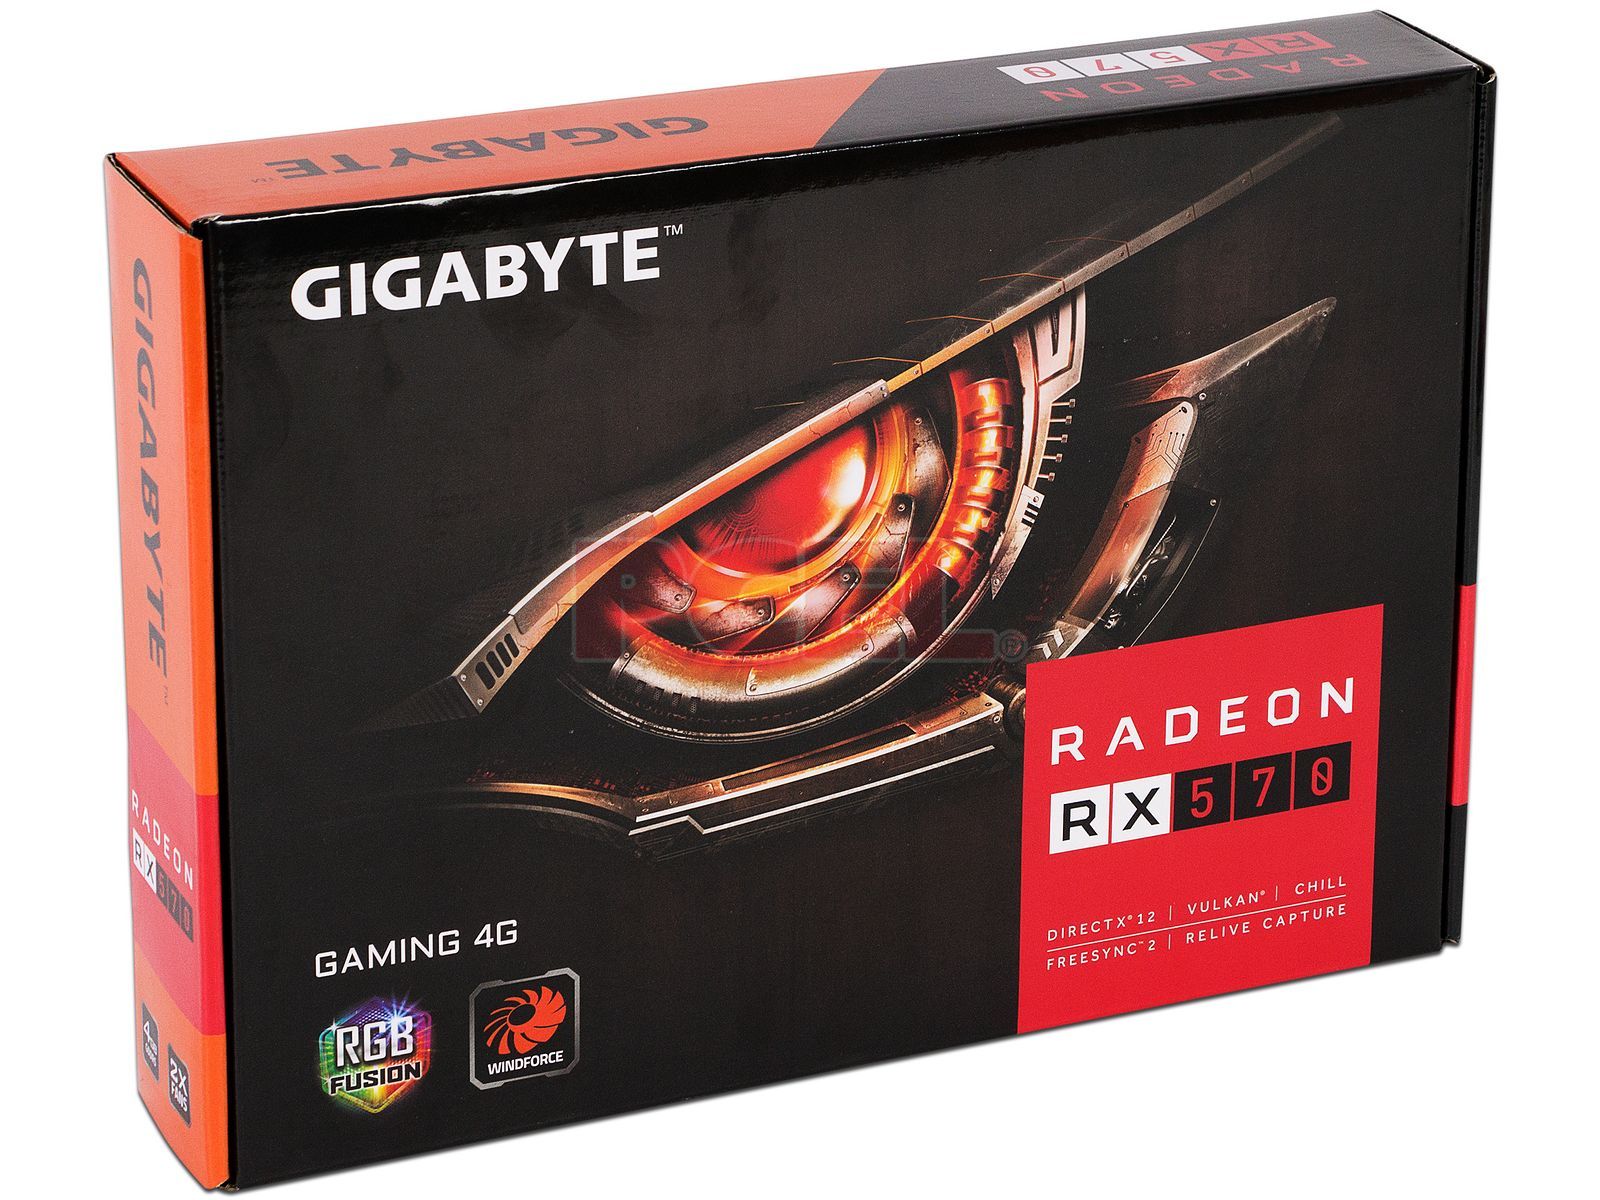 RX 570 Gigabyte. Gigabyte AMD Radeon RX 570. Gigabyte RX 570 4gb Gaming. Gigabyte 570 подсветка видеокарта. Gigabyte 570 gaming